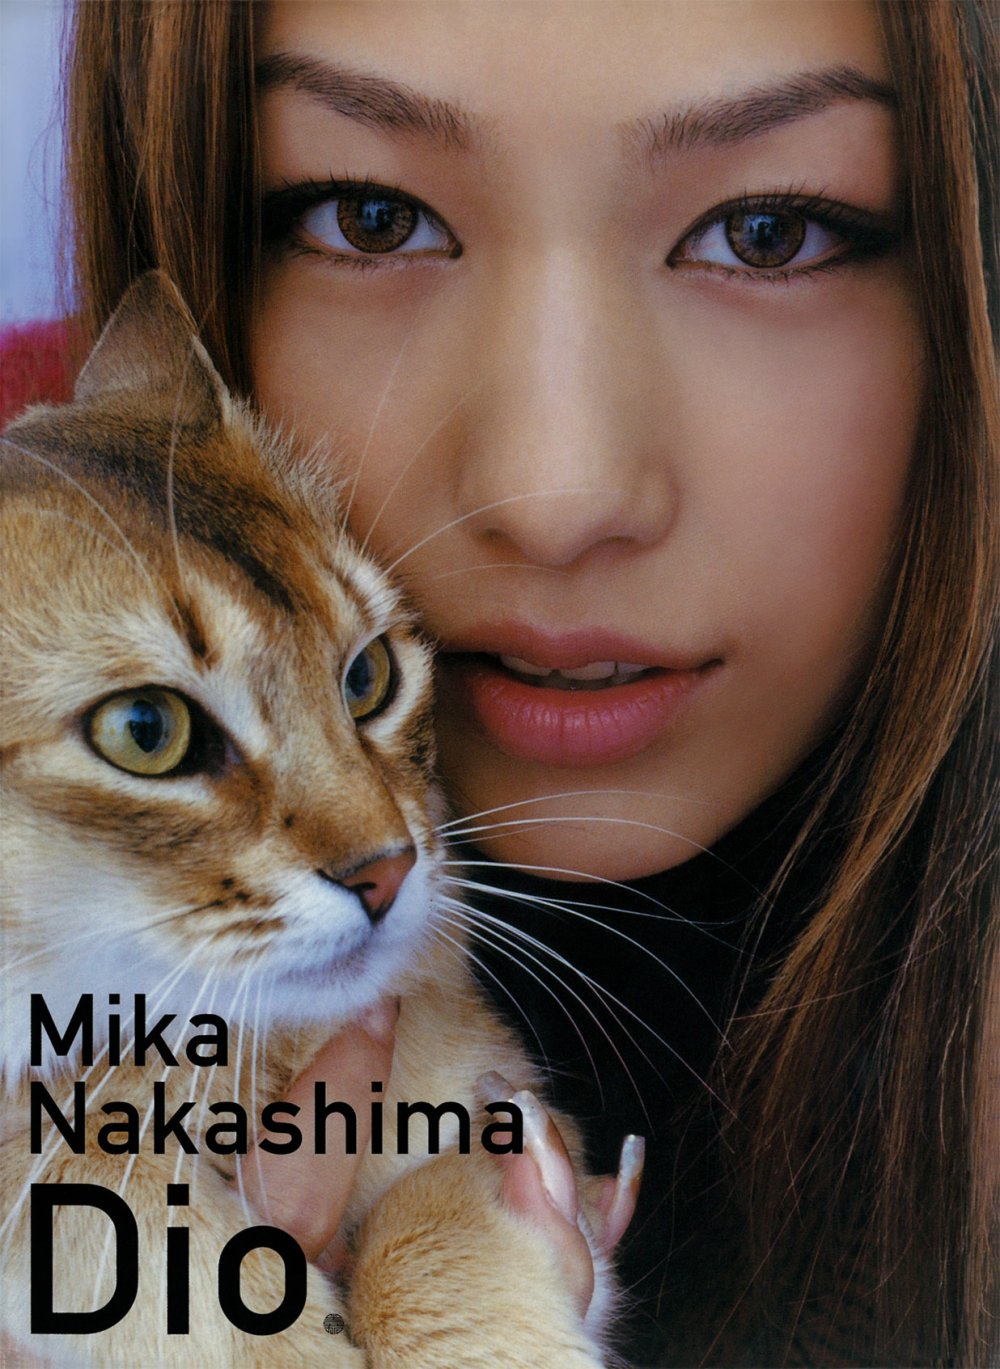 Mika Nakashima Sexy and Hottest Photos , Latest Pics